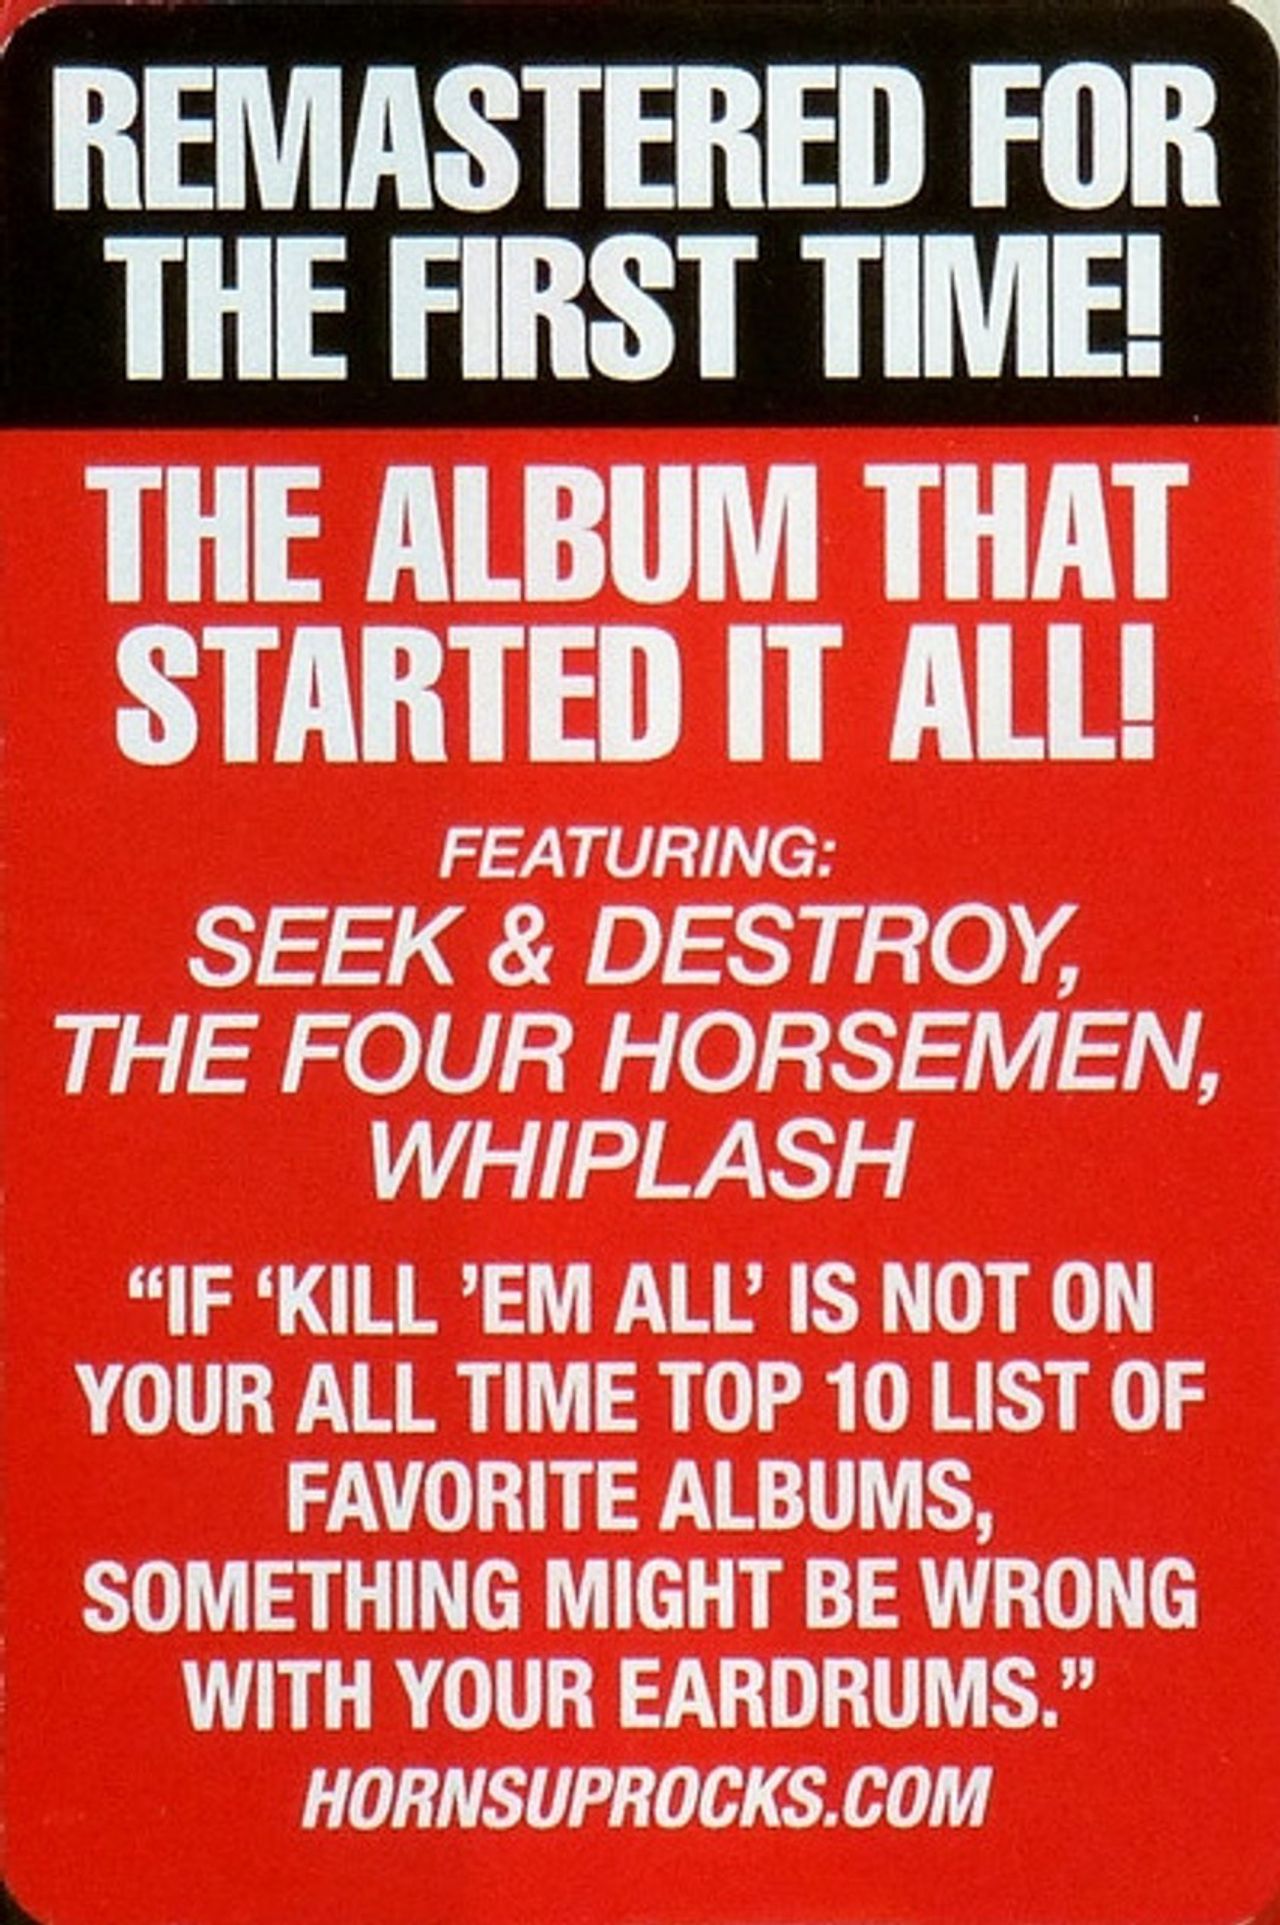 Kill 'Em All - Metallica (LP/Vinyl)